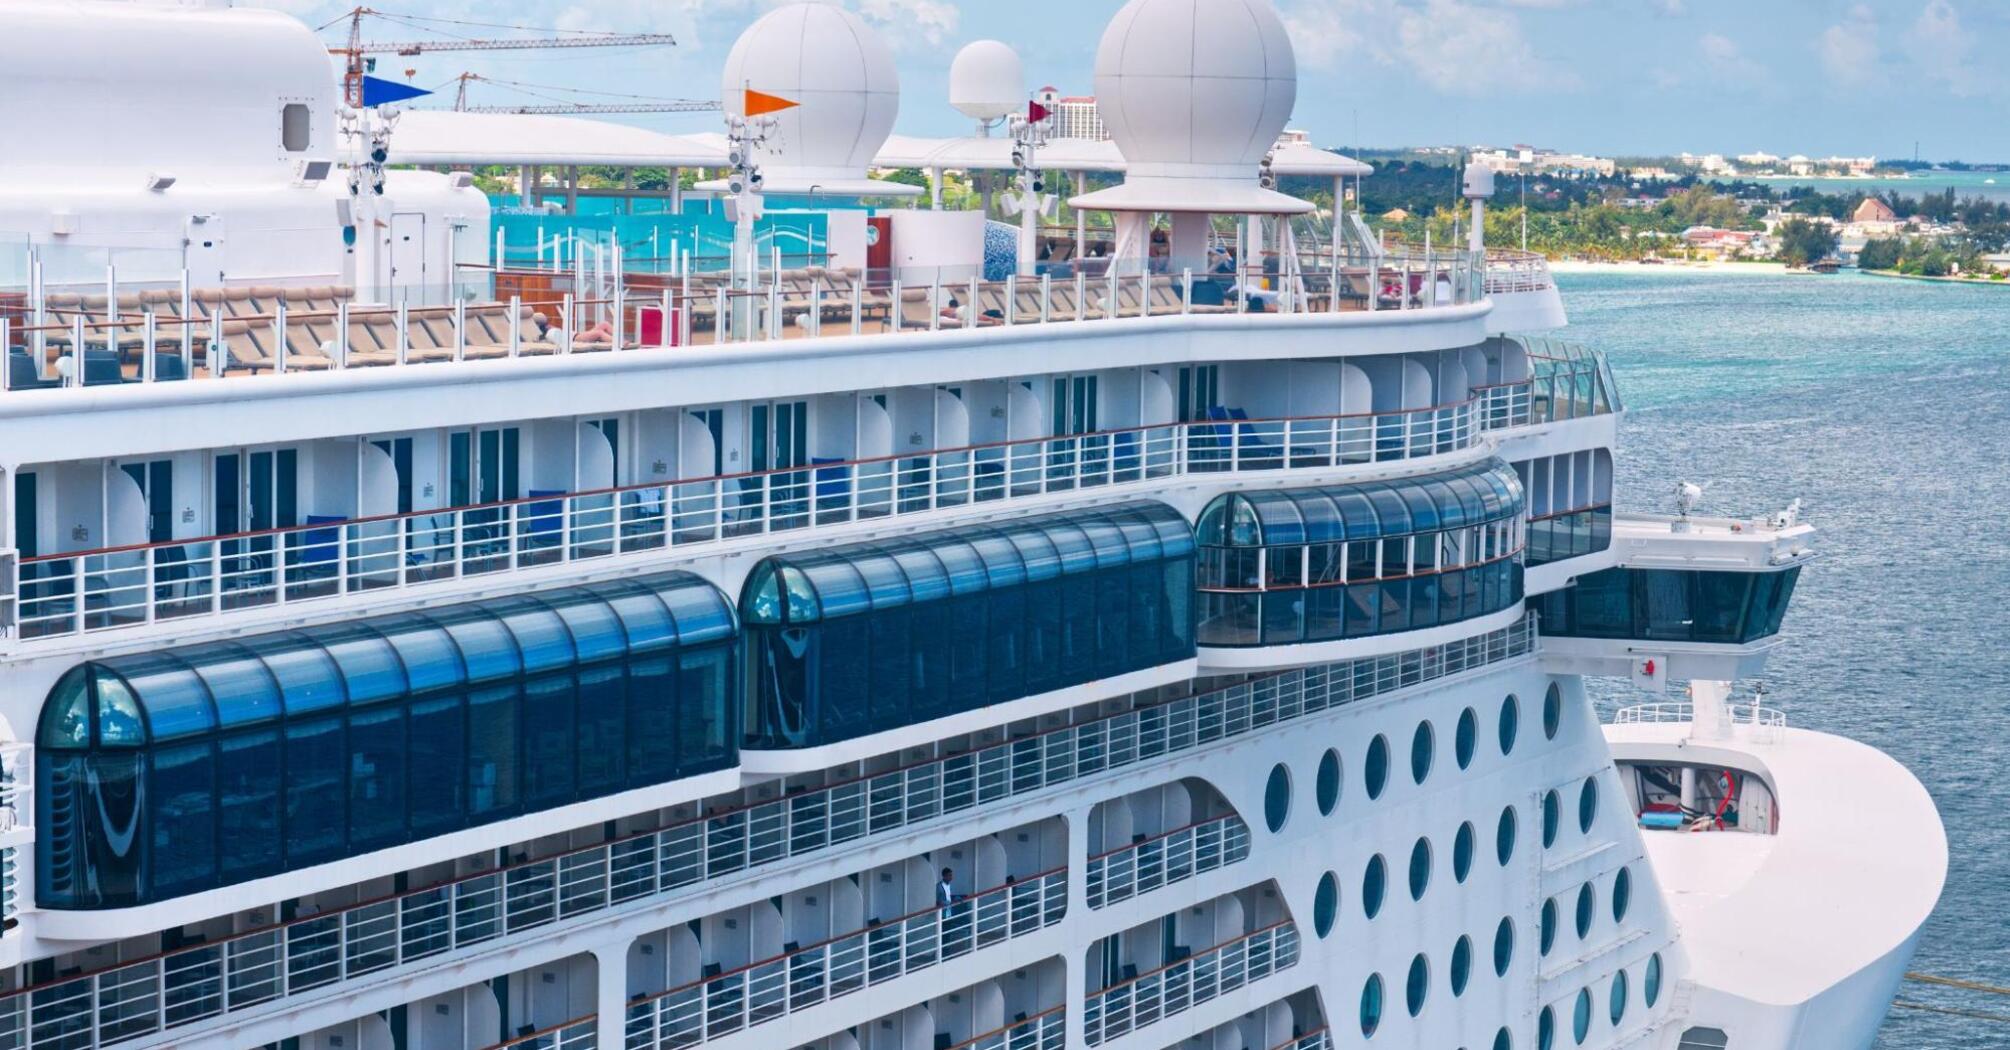 Luxury multi-story cruise ship